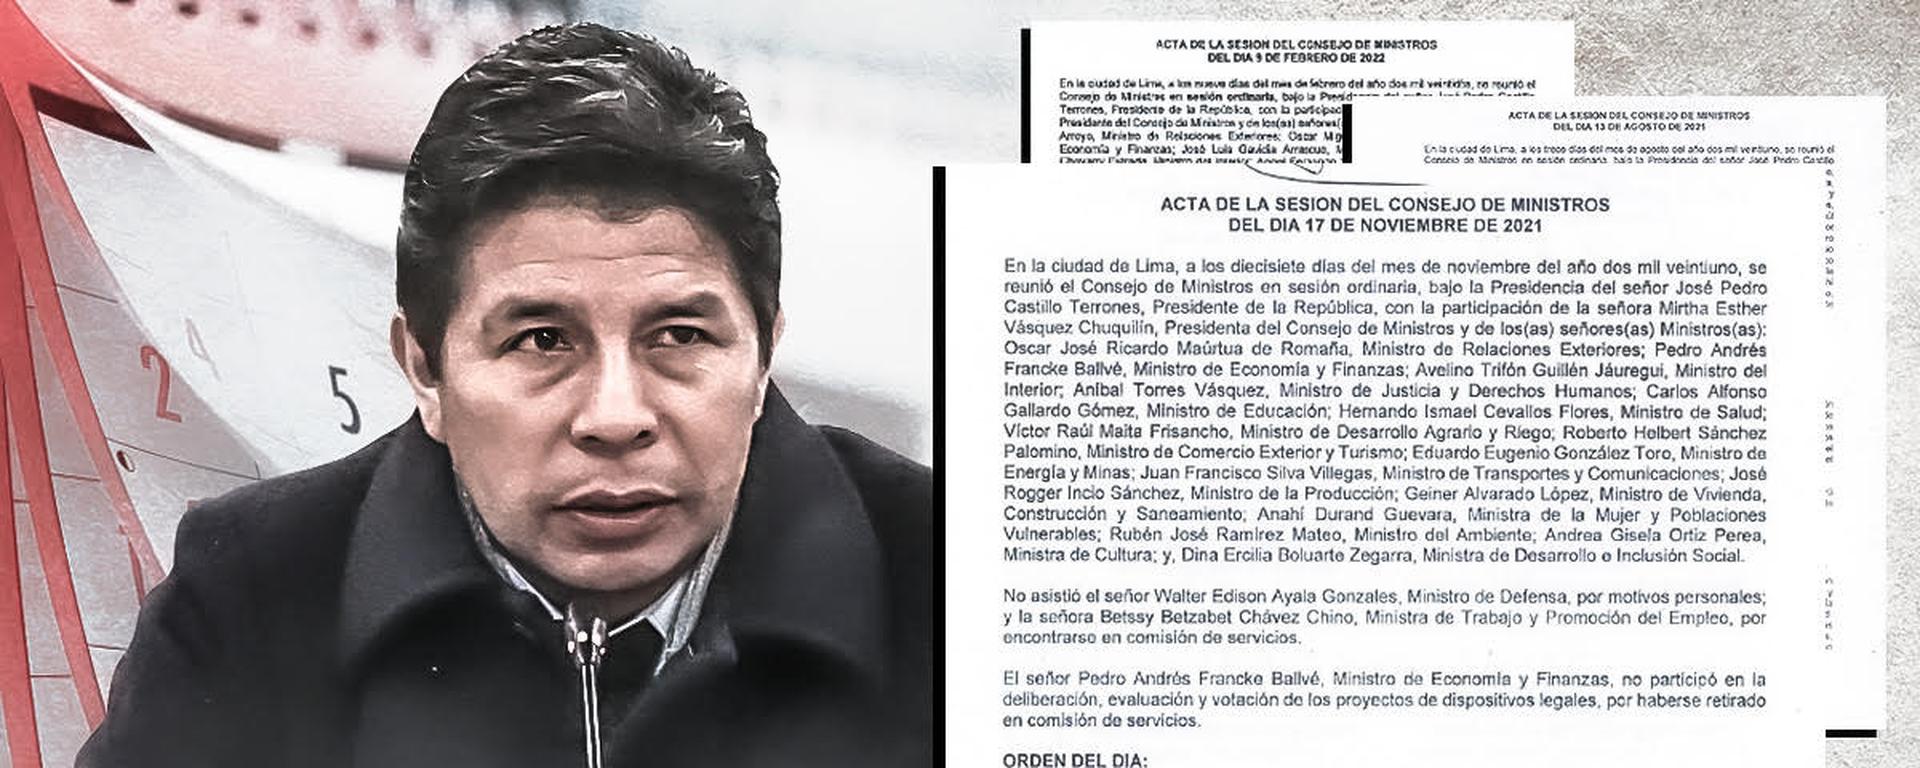 Pedro Castillo intervino 60 veces en 89 Consejos de Ministros | INFORME